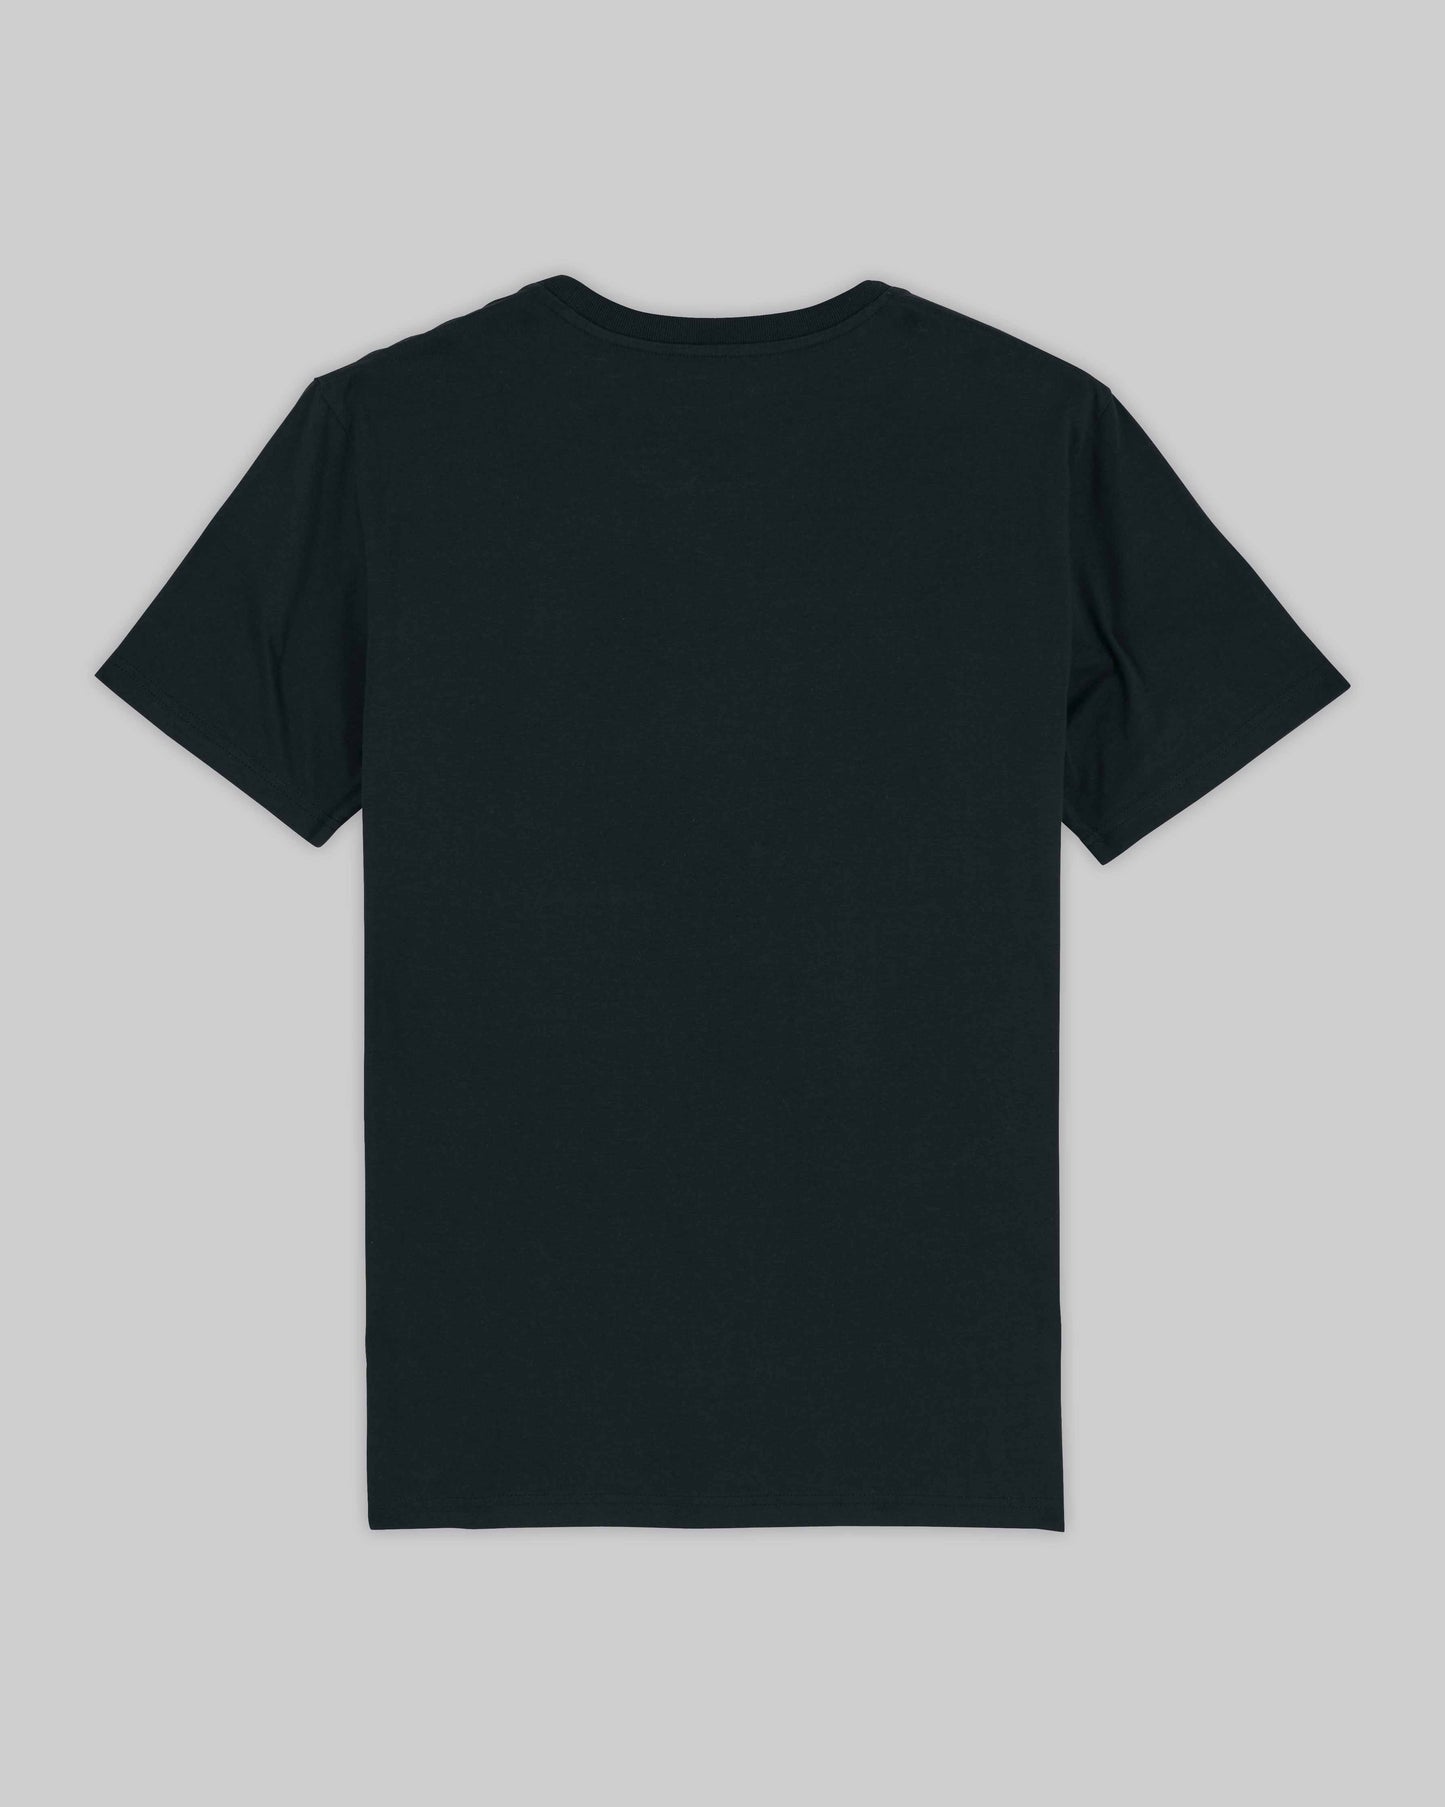 EINHORST® unisex Organic Shirt in Schwarz mit dem Motiv "queer Regenbogen" in der Kombination weißer Regenbogen mit weißer Schrift, Bild von Shirt von hinten